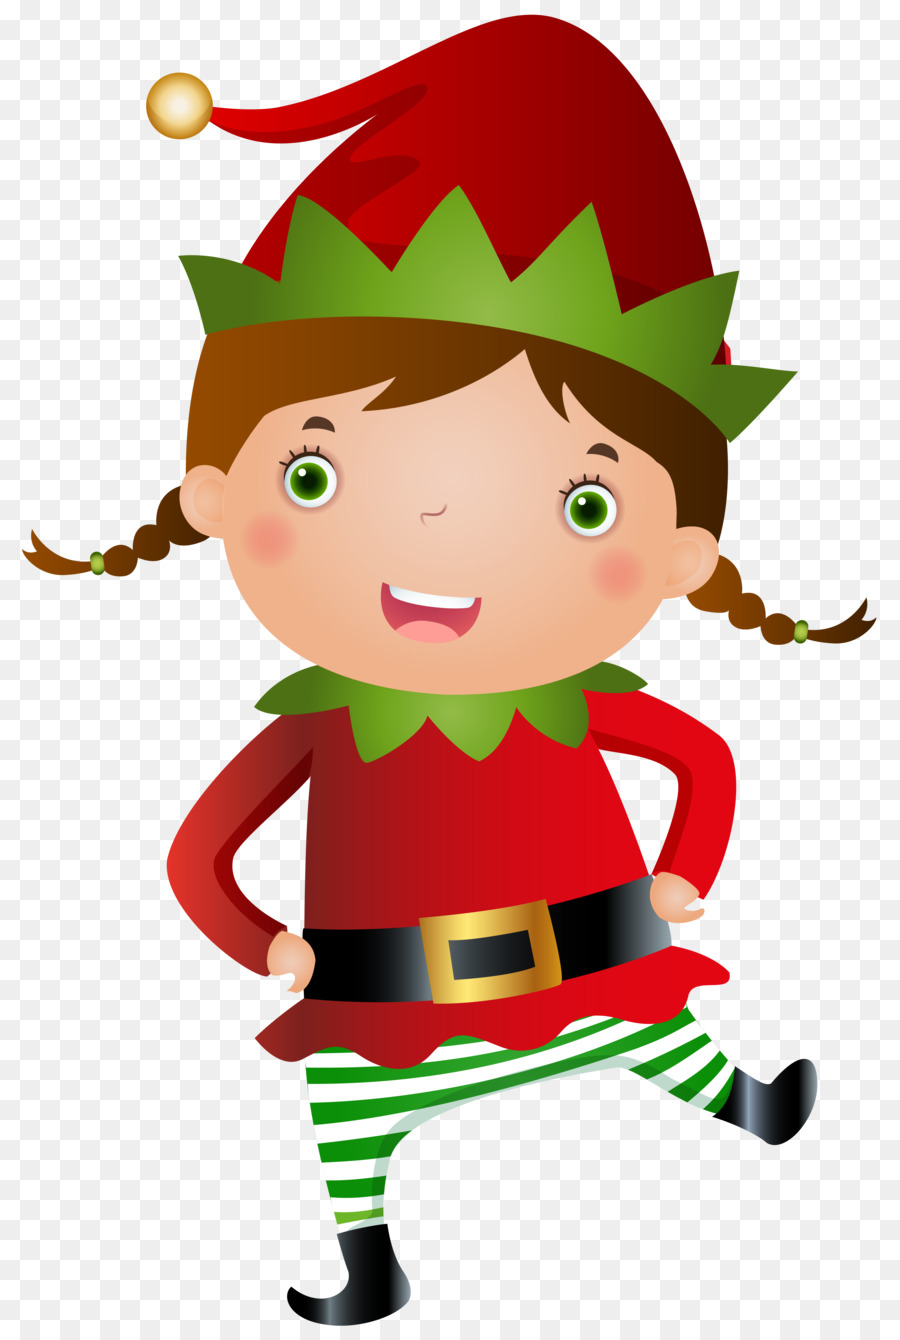 Santa Claus Christmas elf Clip art - Summer Elf Cliparts png download - 4882*7262 - Free Transparent  png Download.